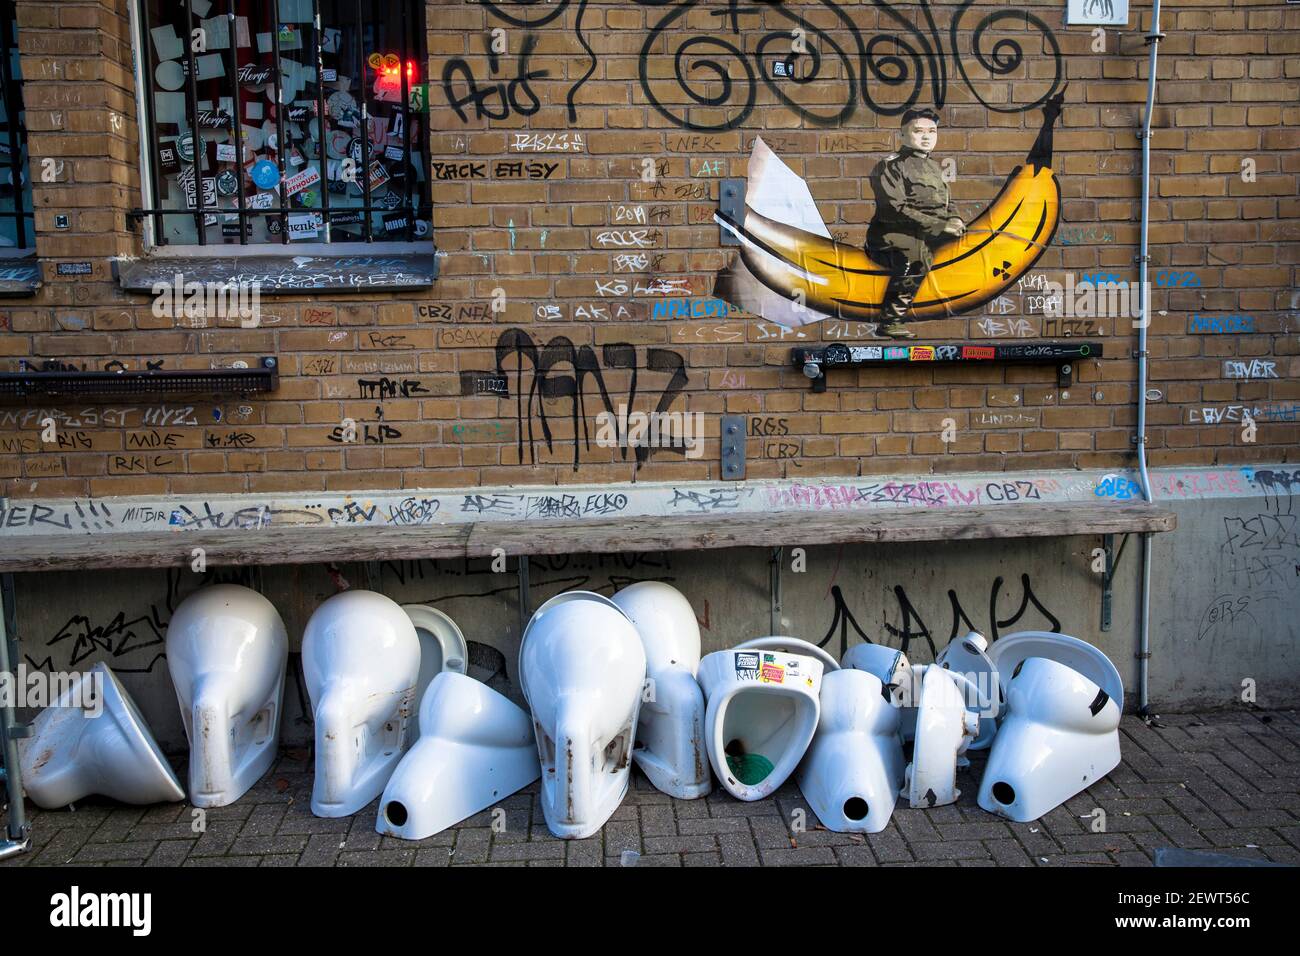 Graffiti del dictador norcoreano Kim Jong-un en su plátano nuclear y urinarios viejos y cuencos del inodoro en la estación oeste de Colonia, Colonia, Alemania. Graff Foto de stock